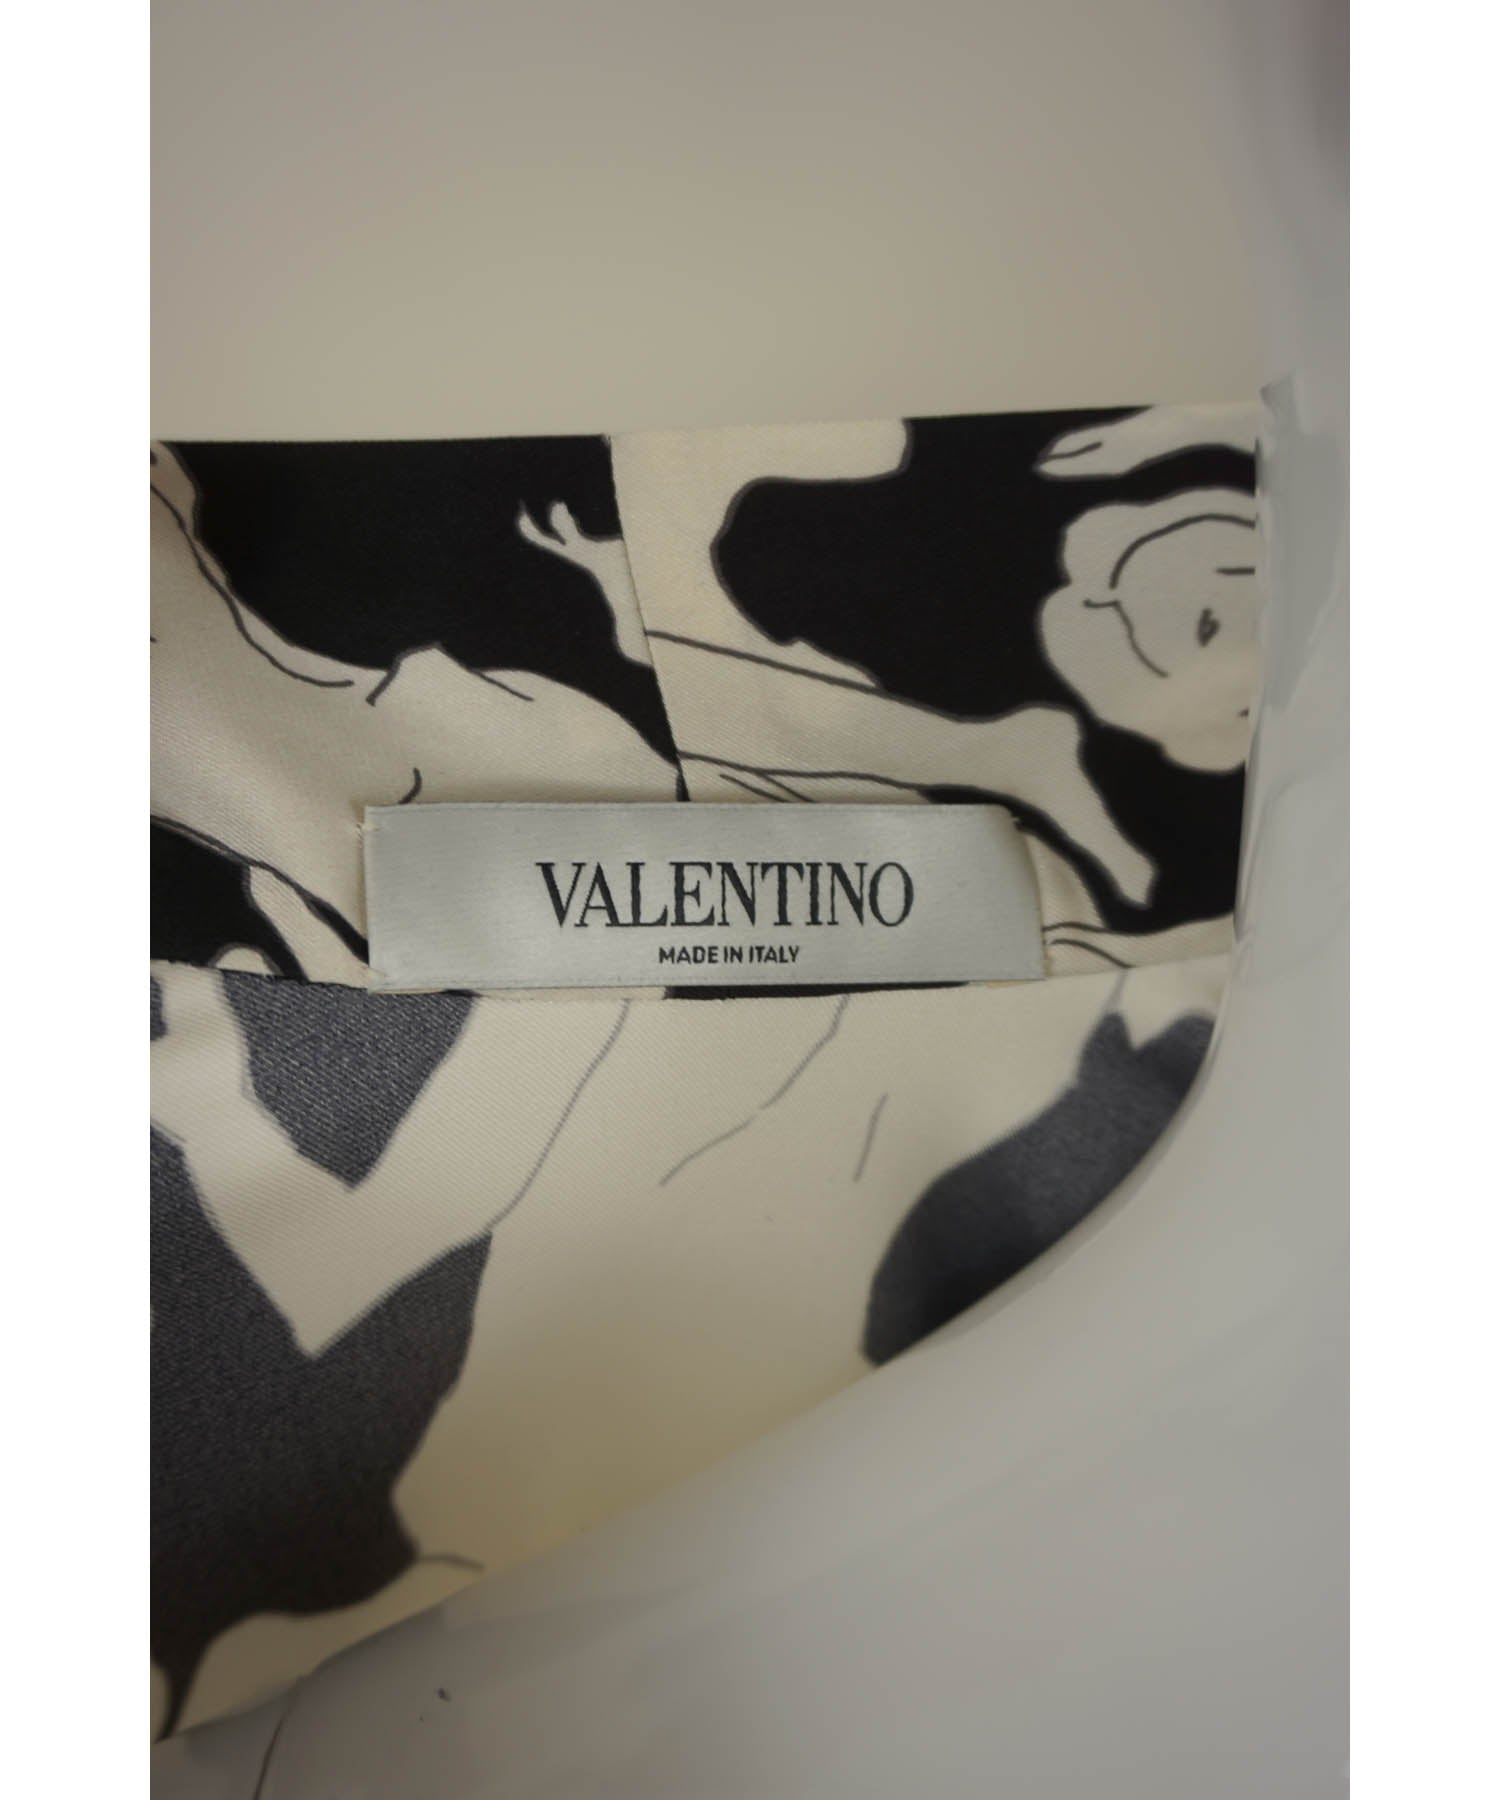 Louis Vuitton Strap Print Silk Blouse | Foxy Couture Carmel